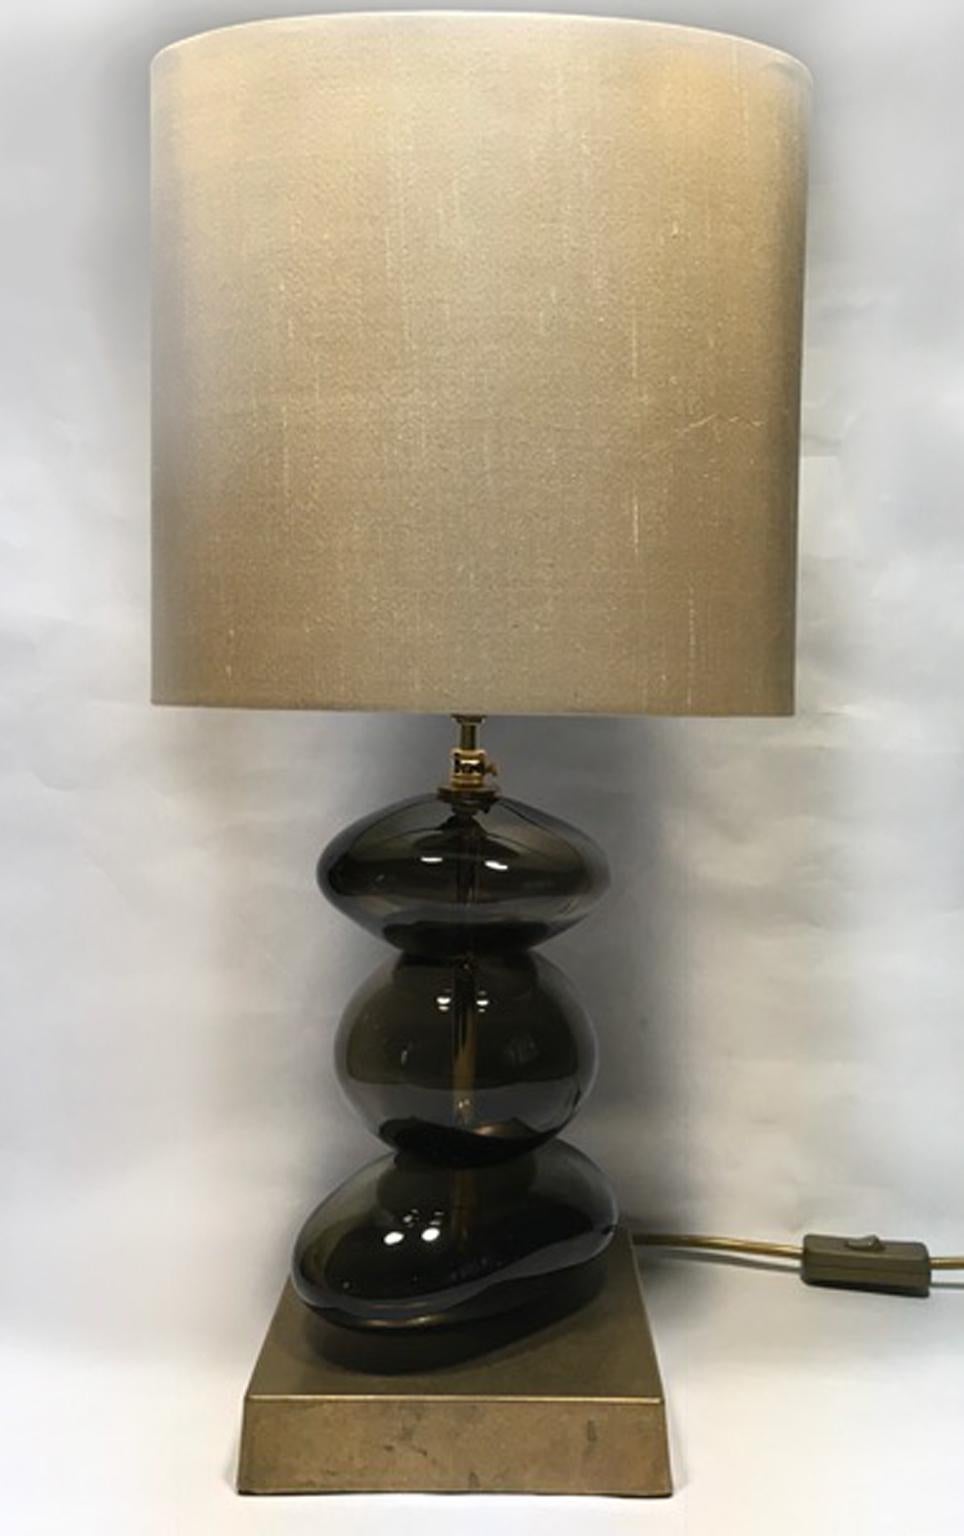 Dies ist ein Paar von Bronze Farbe geblasenem Glas Tischlampen mit reiner Seide handgefertigt Lampenschirme, der zeitgenössischen Produktion.
Es ist ein wunderschöner Blickfang, ein Kunstwerk für seine elegante Präsenz und für die organische Form